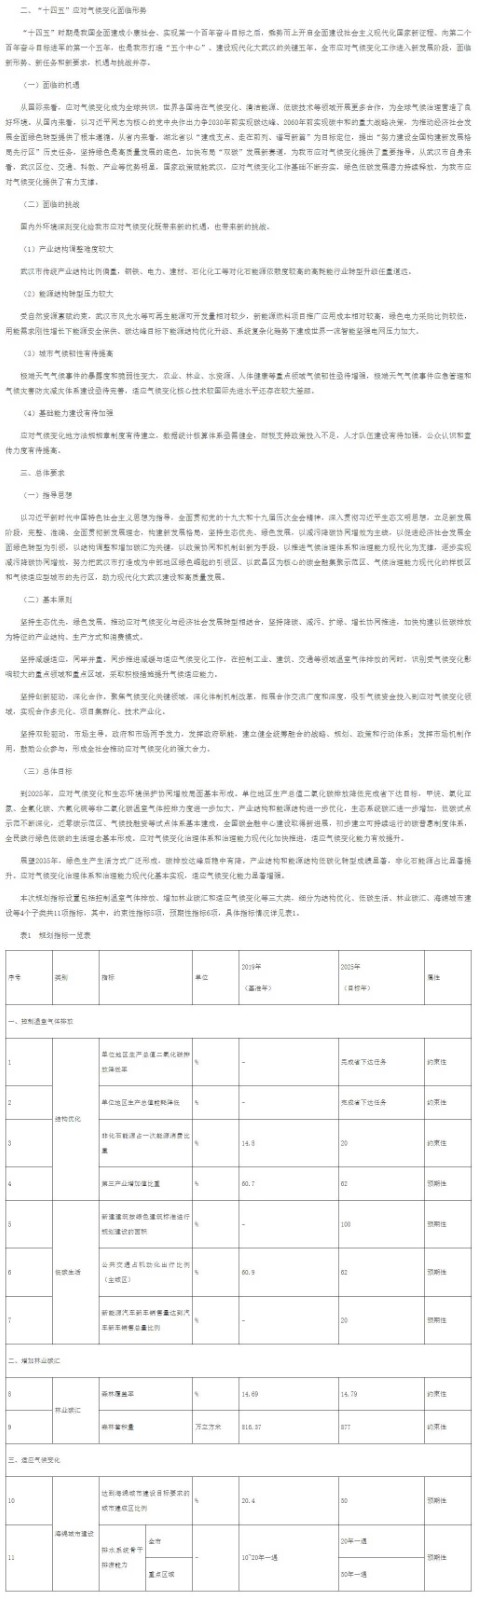 武汉市应对气候变化“十四五”规划（征求意见稿）.jpg